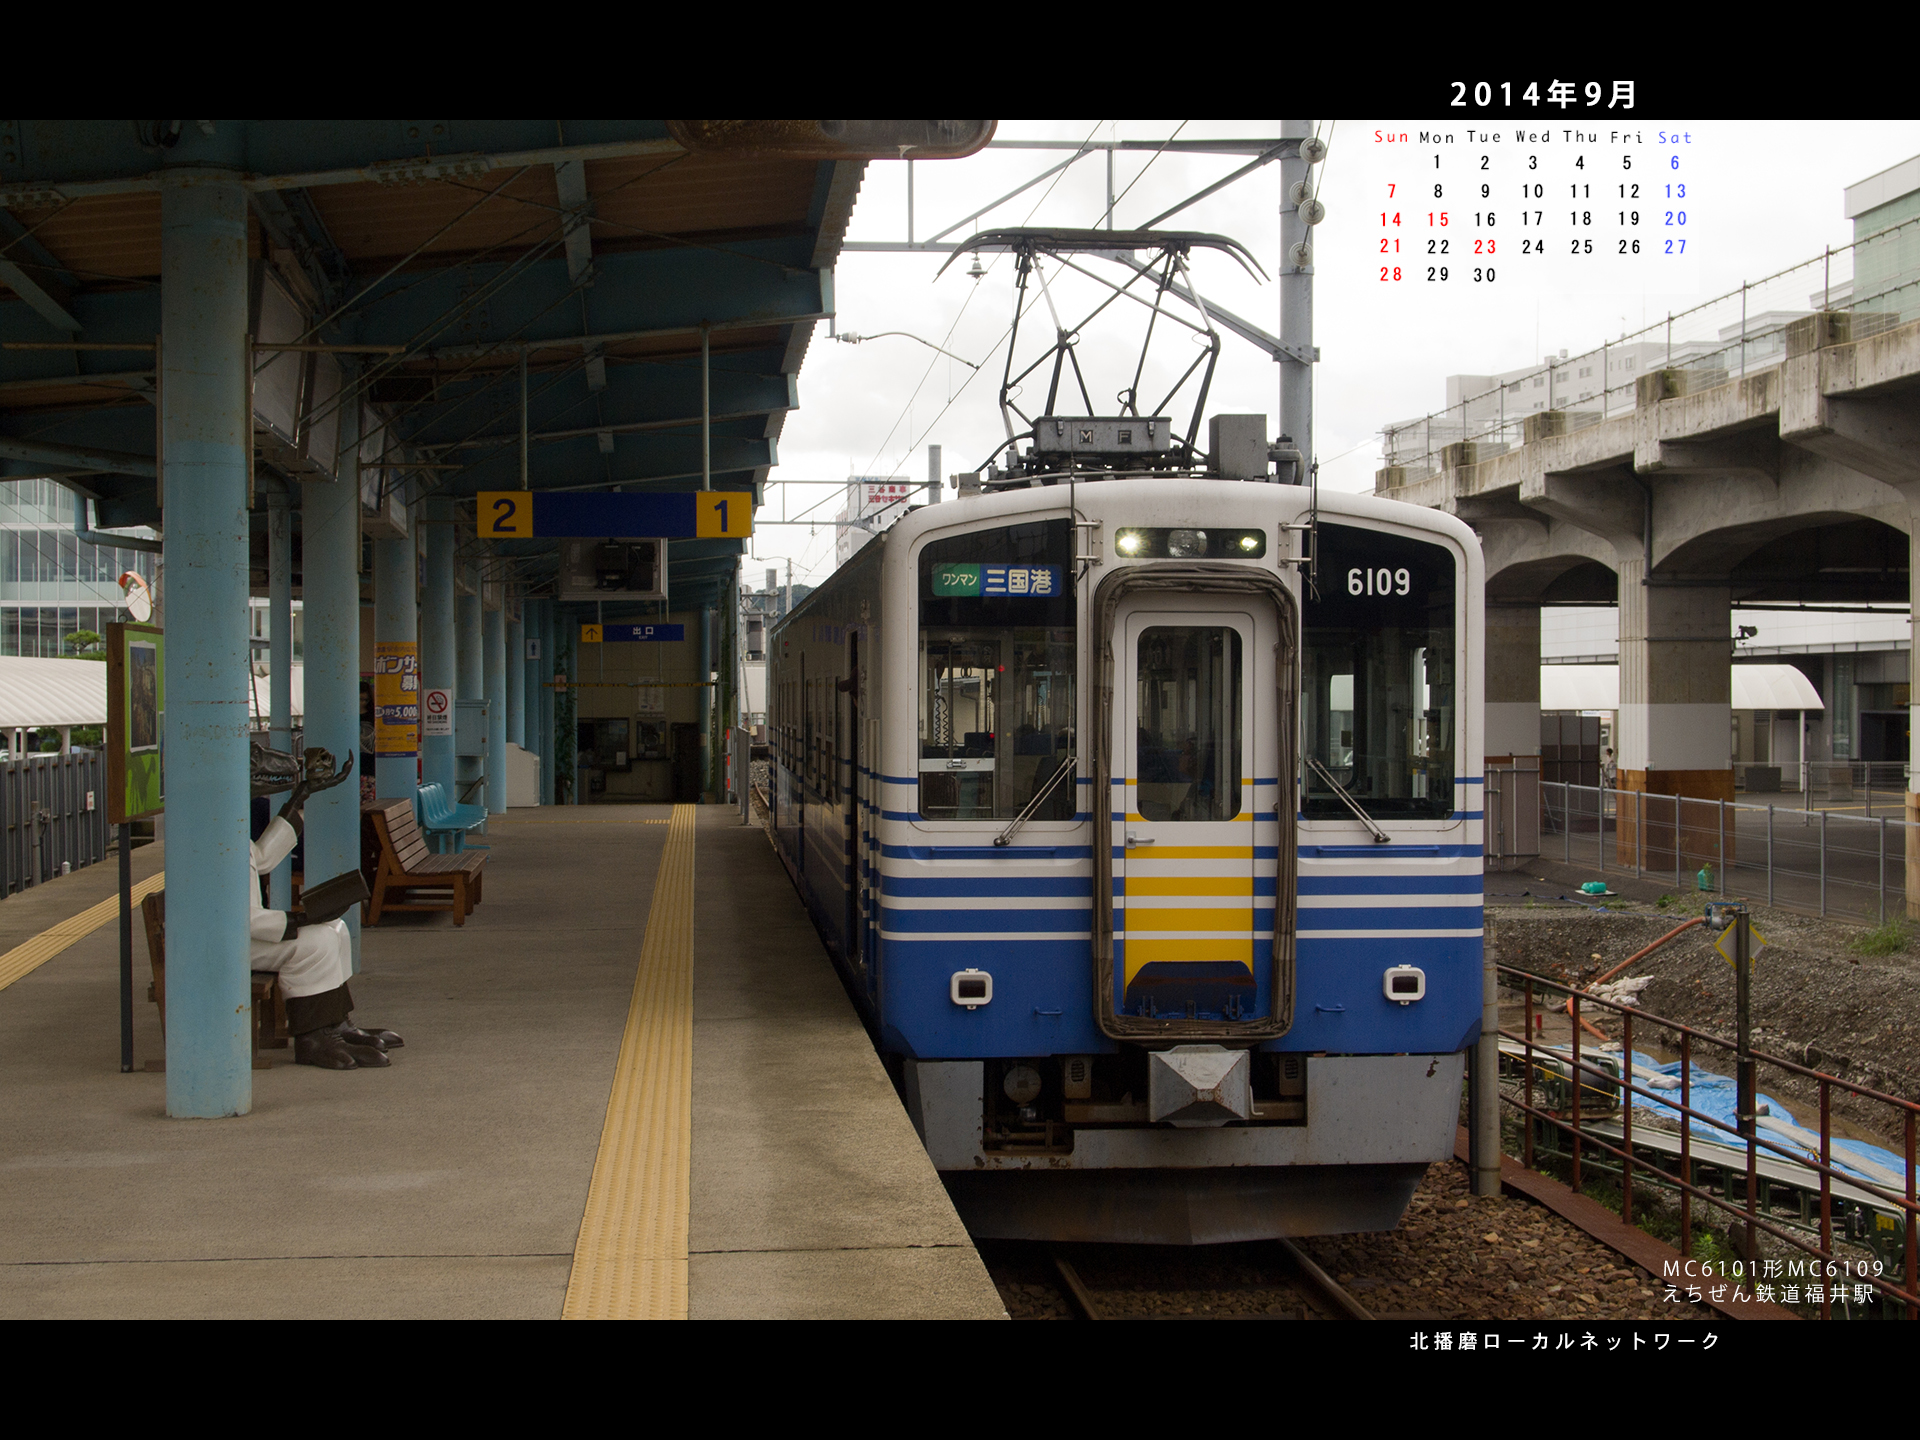 2014年9月4対3画面用壁紙えちぜん鉄道 北播磨ローカルネットワーク